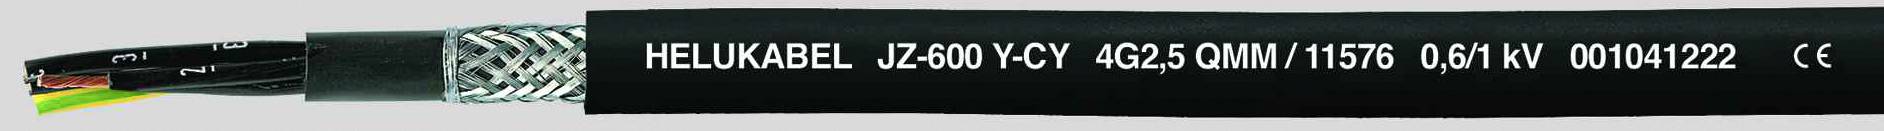 HELUKABEL JZ-600-Y-CY Steuerleitung 18 G 1.50 mm² Schwarz 11559-500 500 m